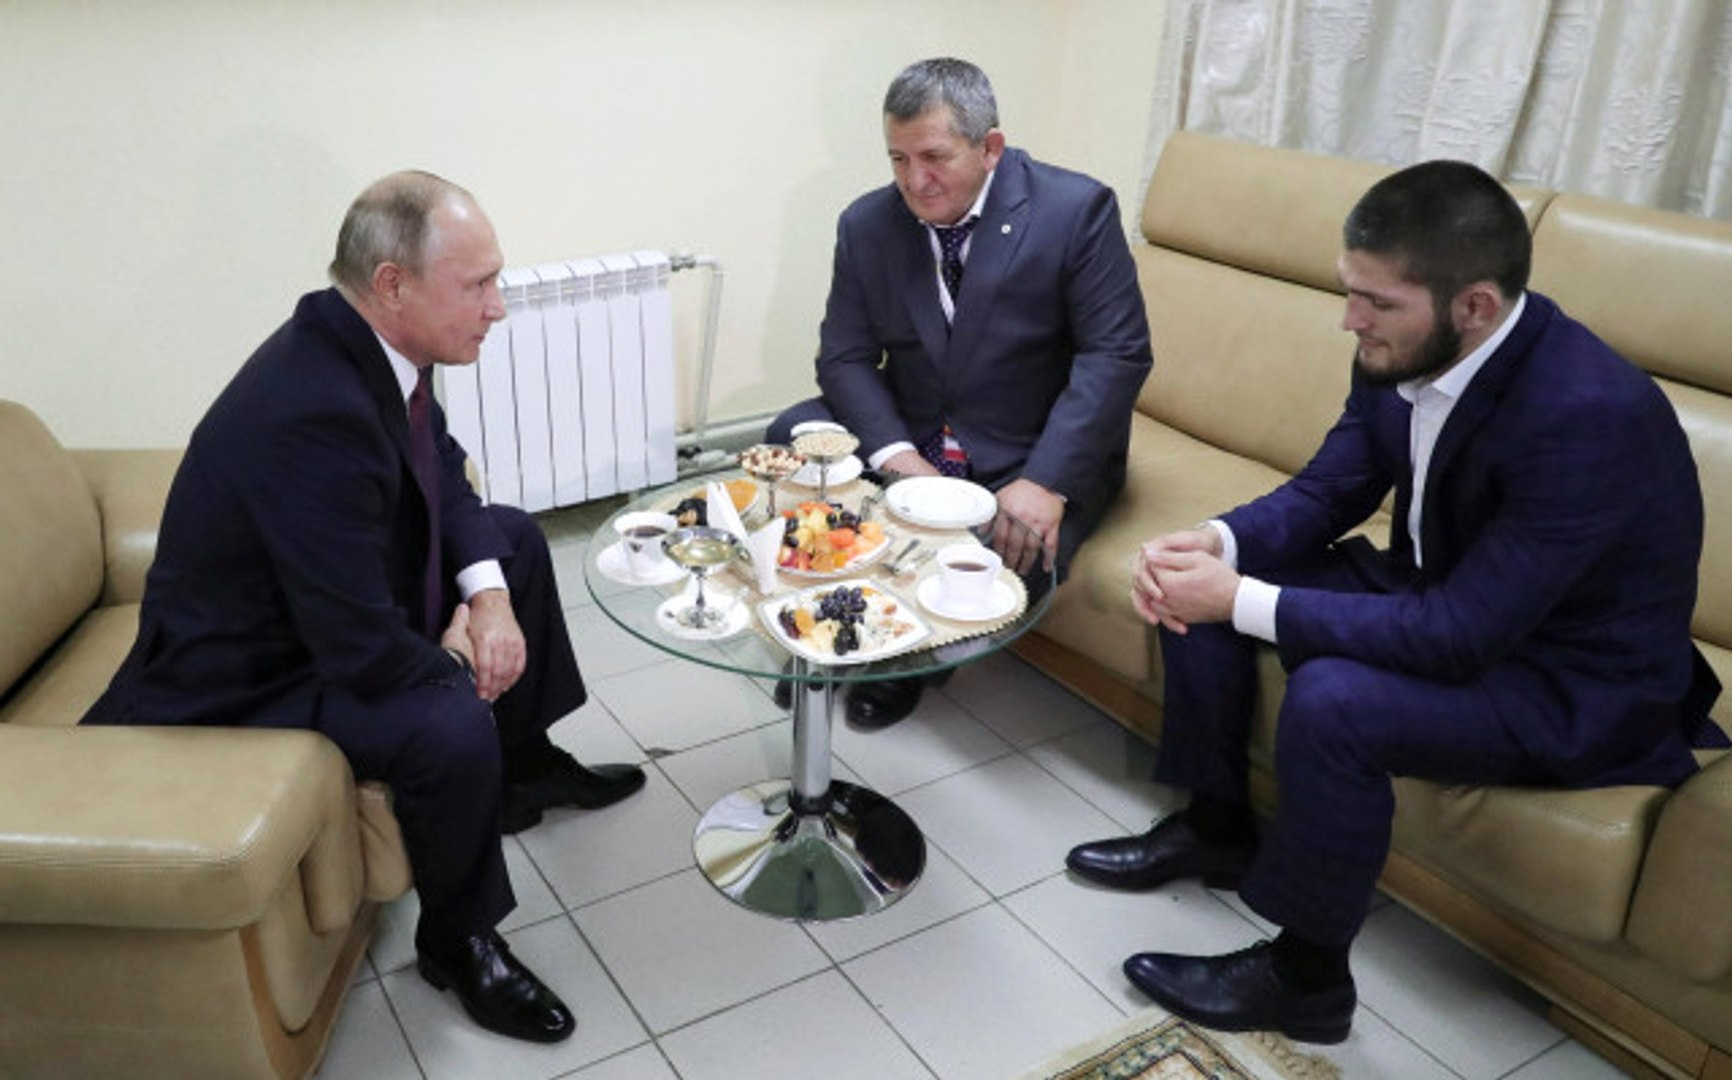 Журналист сообщил о договоренности Уайта и Путина о вылете Хабиба в США. Уайт отреагировал